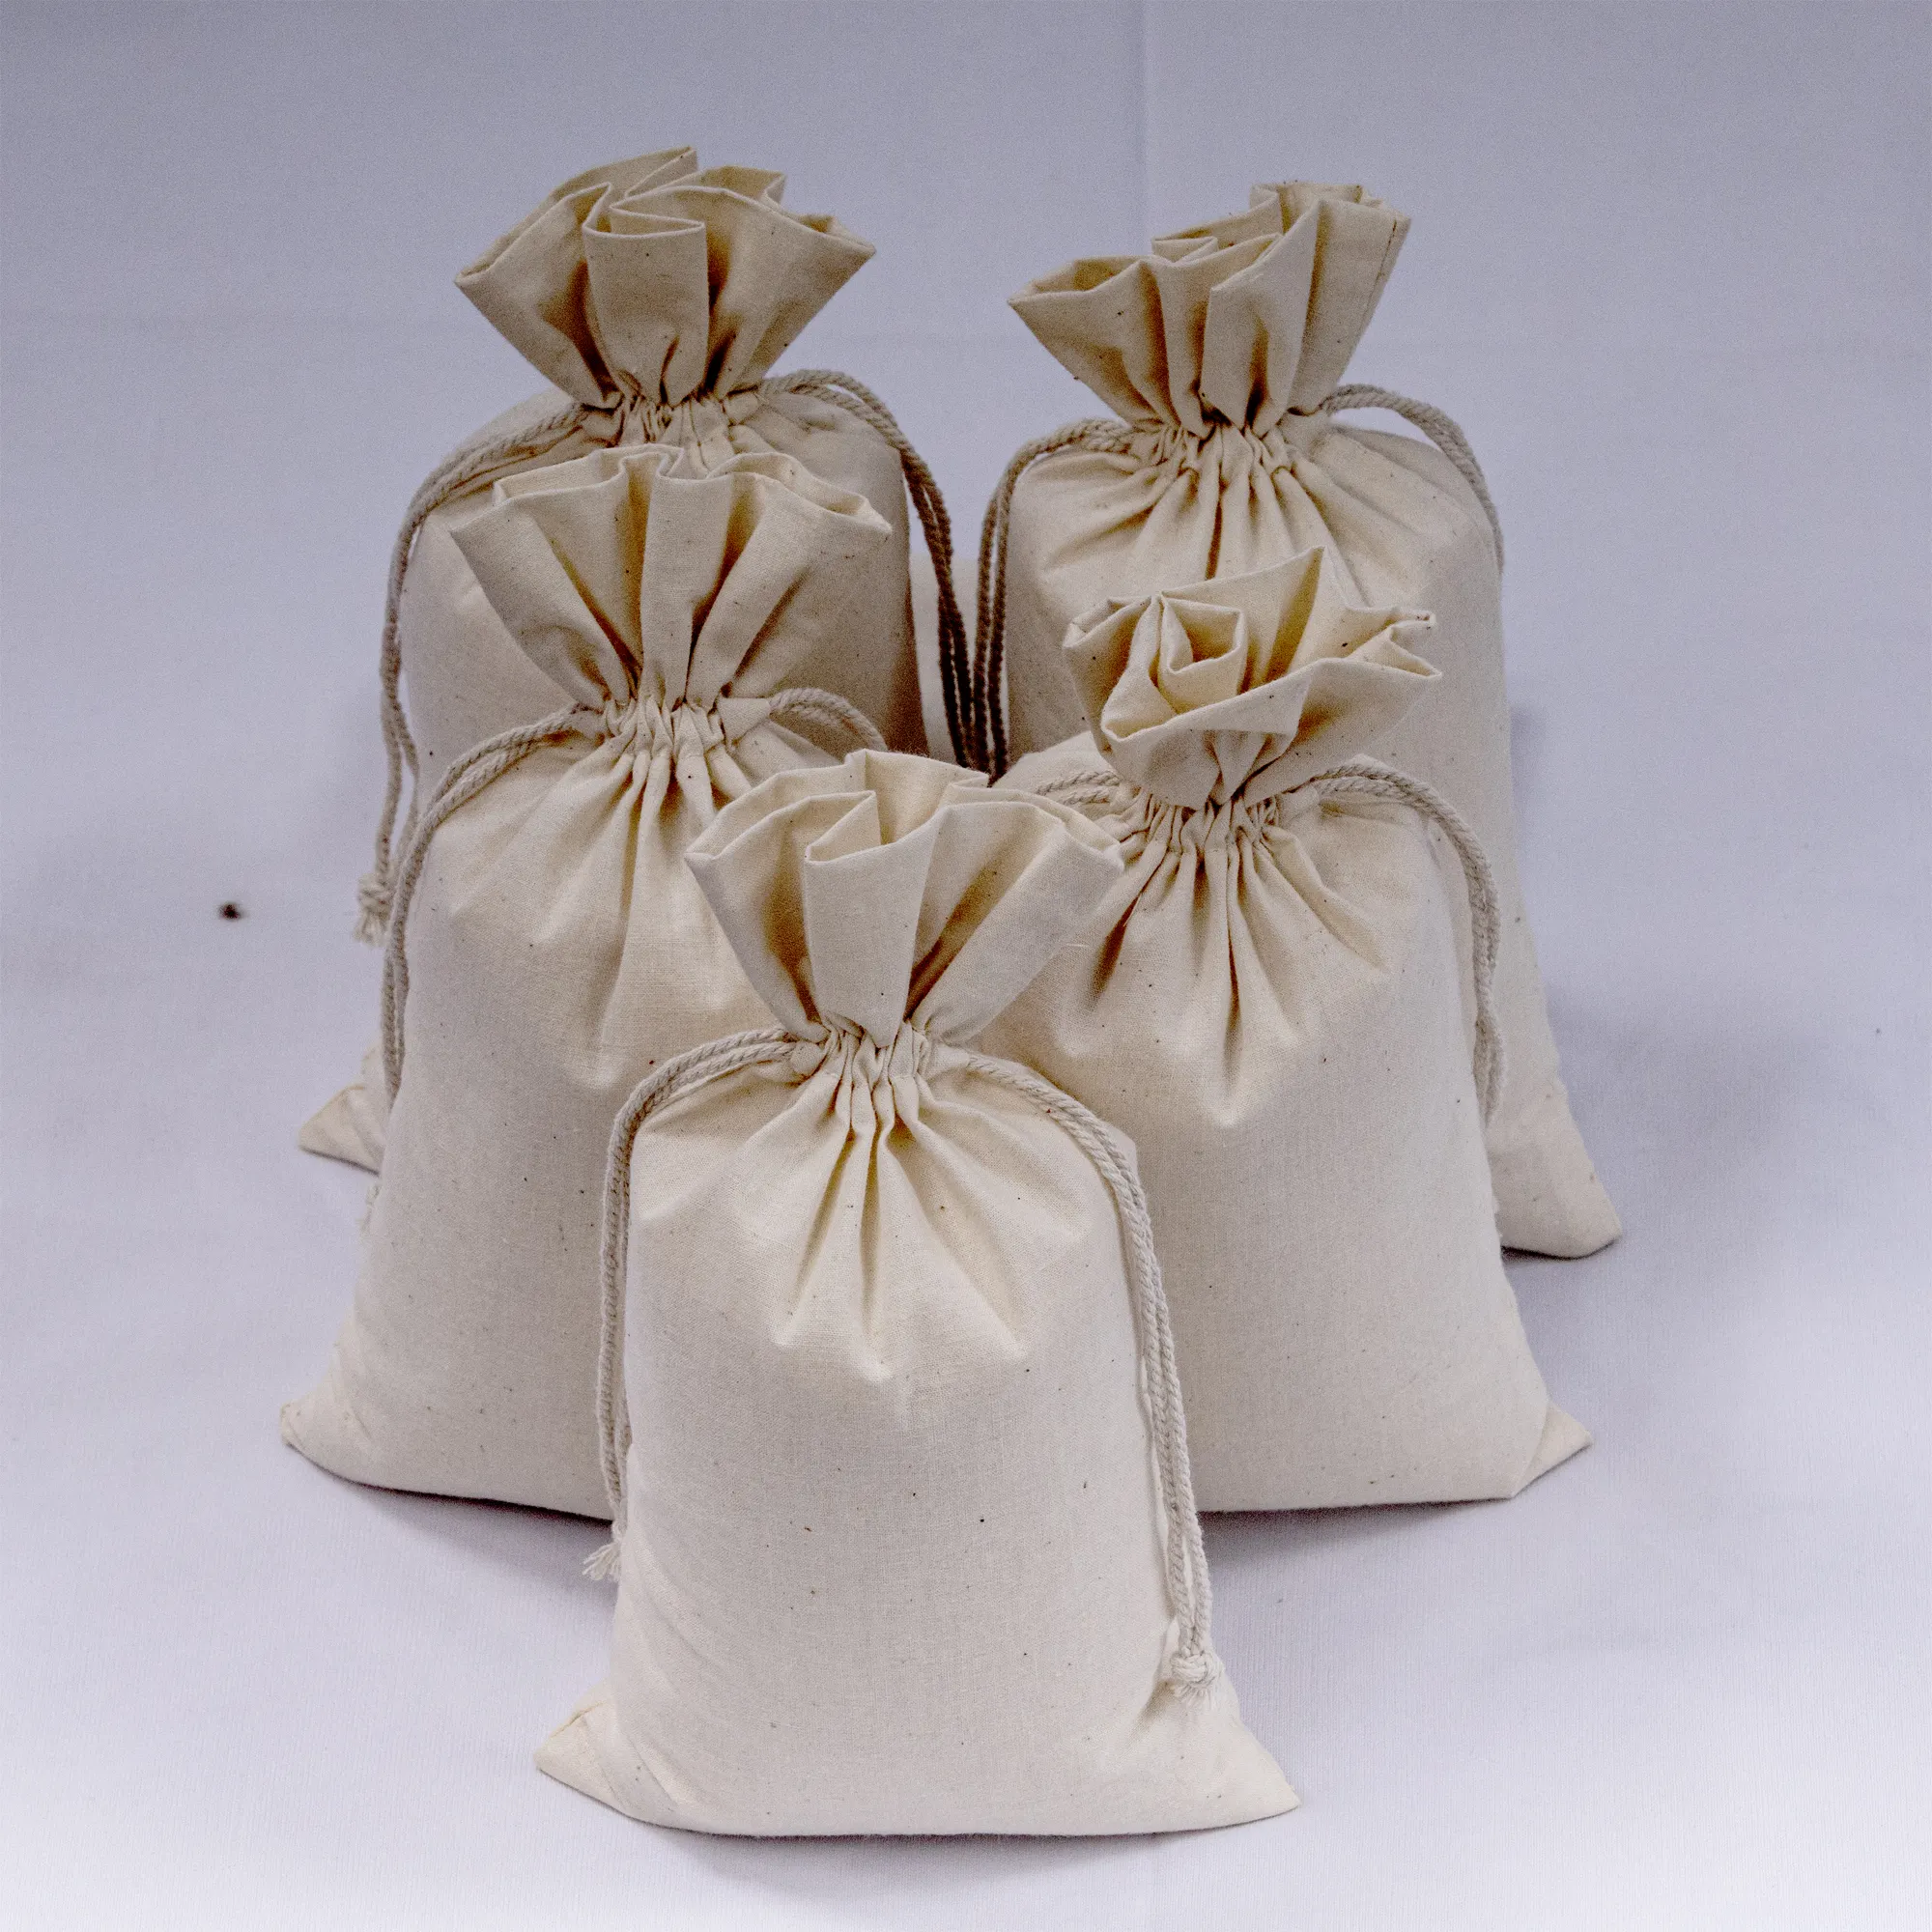 Vente en gros de sacs à cordon 100% coton sacs en mousseline naturelle durables et réutilisables sac en mousseline de coton respectueux de l'environnement